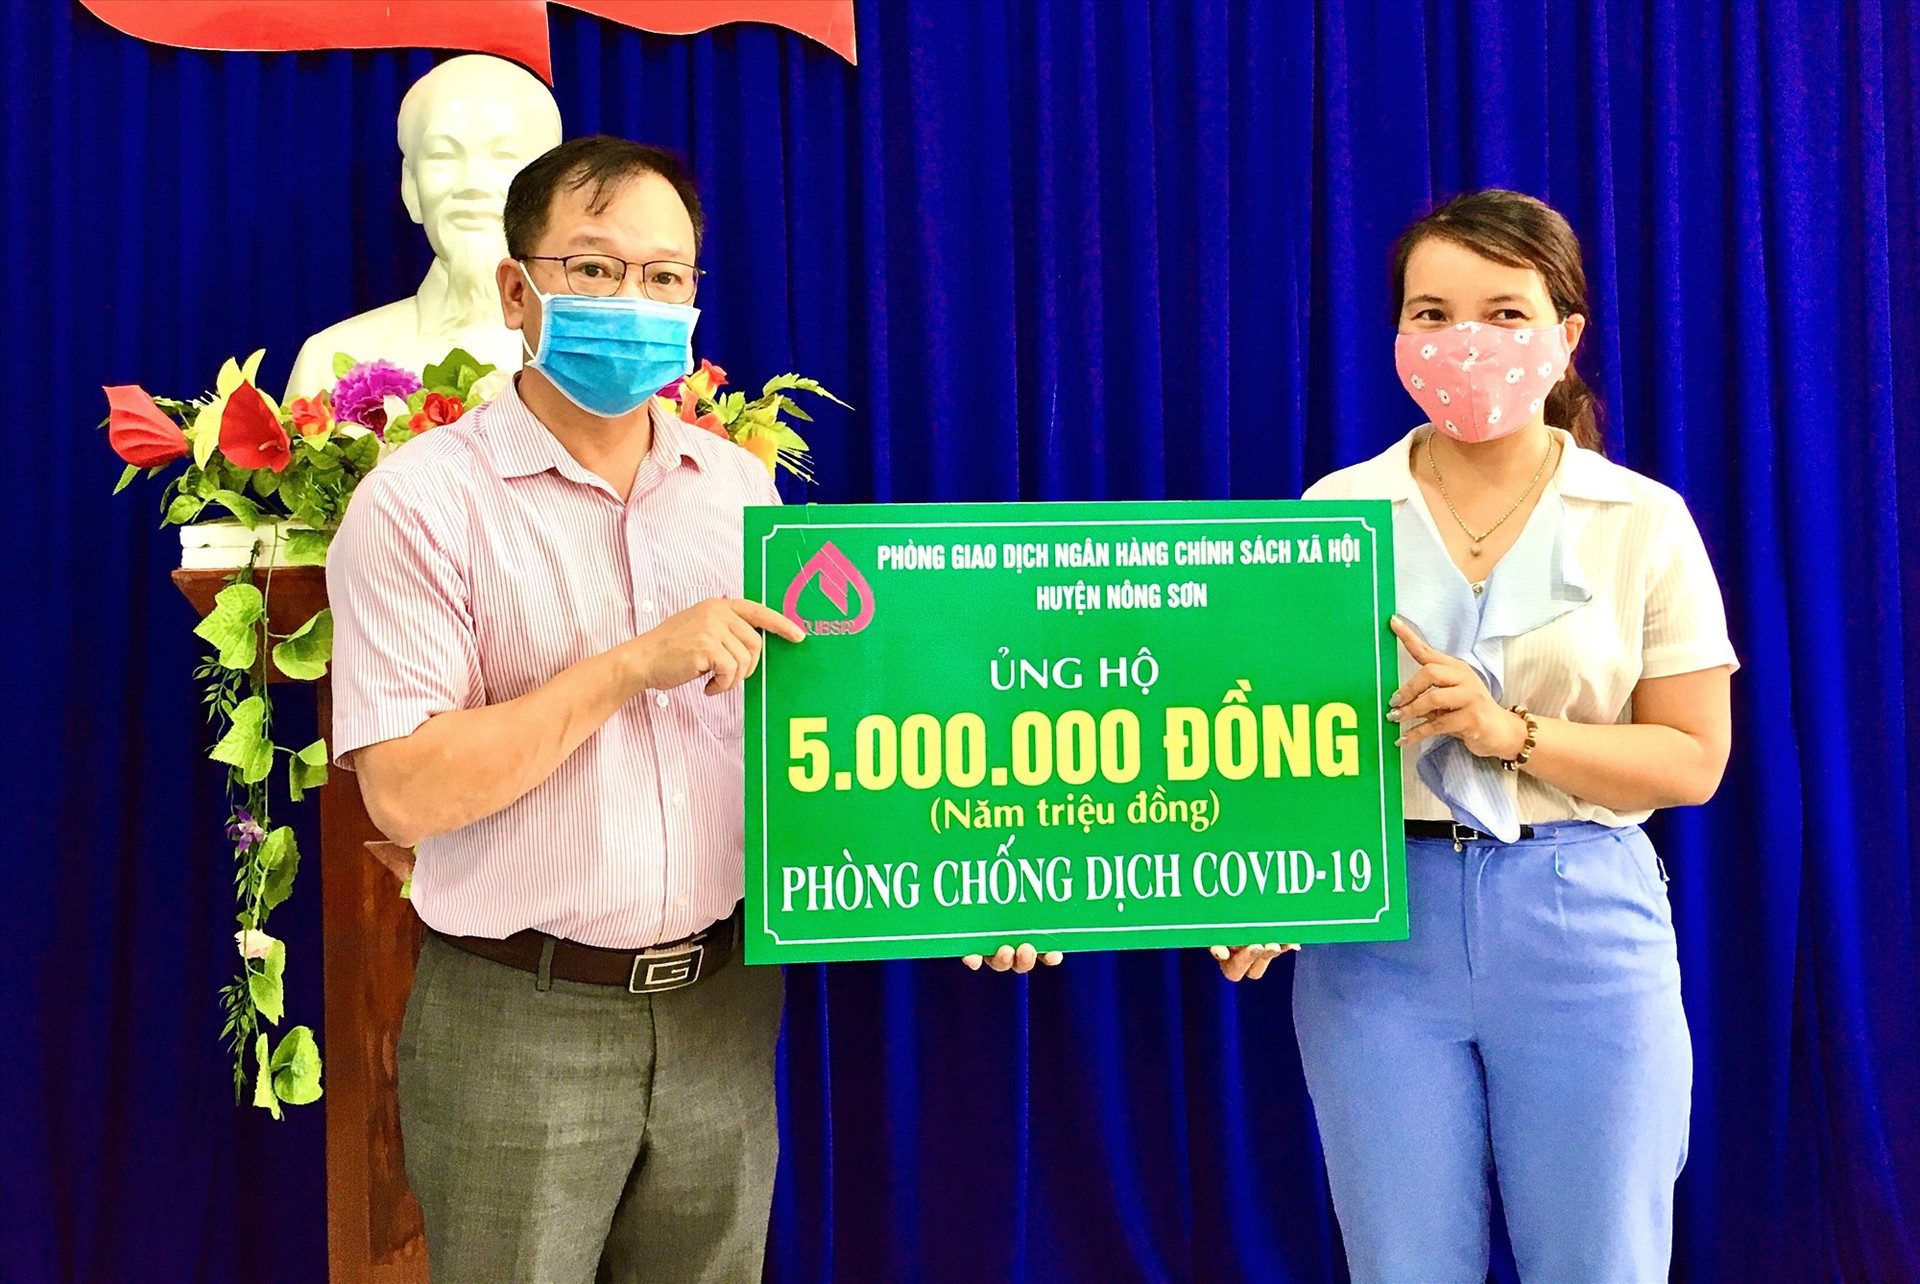 Phòng Giao dịch Ngân hàng Chính sách xã hội huyện Nông Sơn trao 5 triệu đồng hỗ trợ mua sắm trang thiết bị phòng chống dịch Covid-19 cho Ủy ban MTTQ Việt Nam huyện.